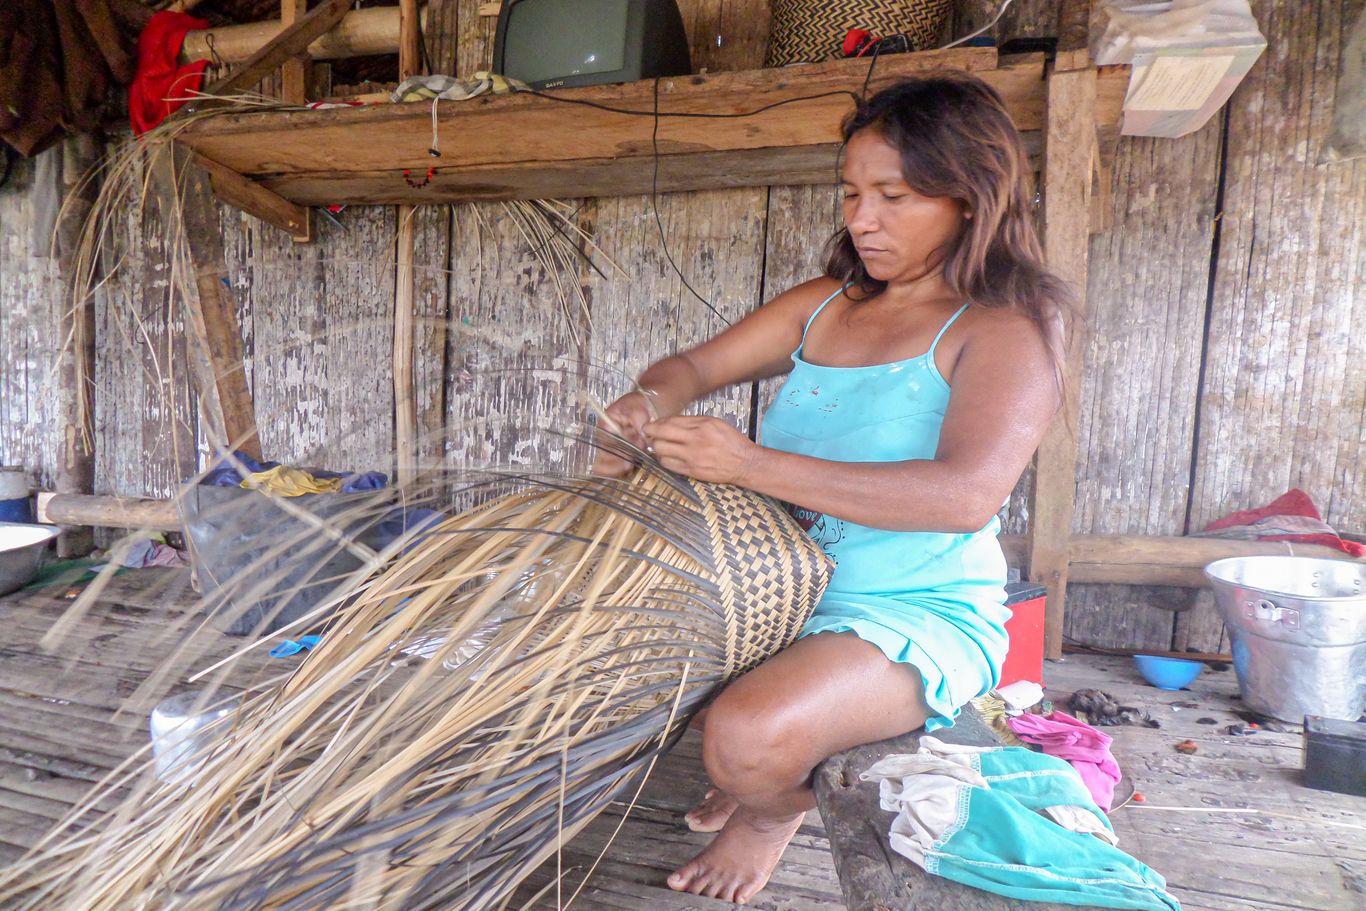 Eine Frau flechtet einen Korb. Die Indigenen können selbstgemachte Produkte (zb. Honig, Copaíba-Öl, geflochtene Körbe) verkaufen und somit fehlende Güter auf lokalen Märkten kaufen.